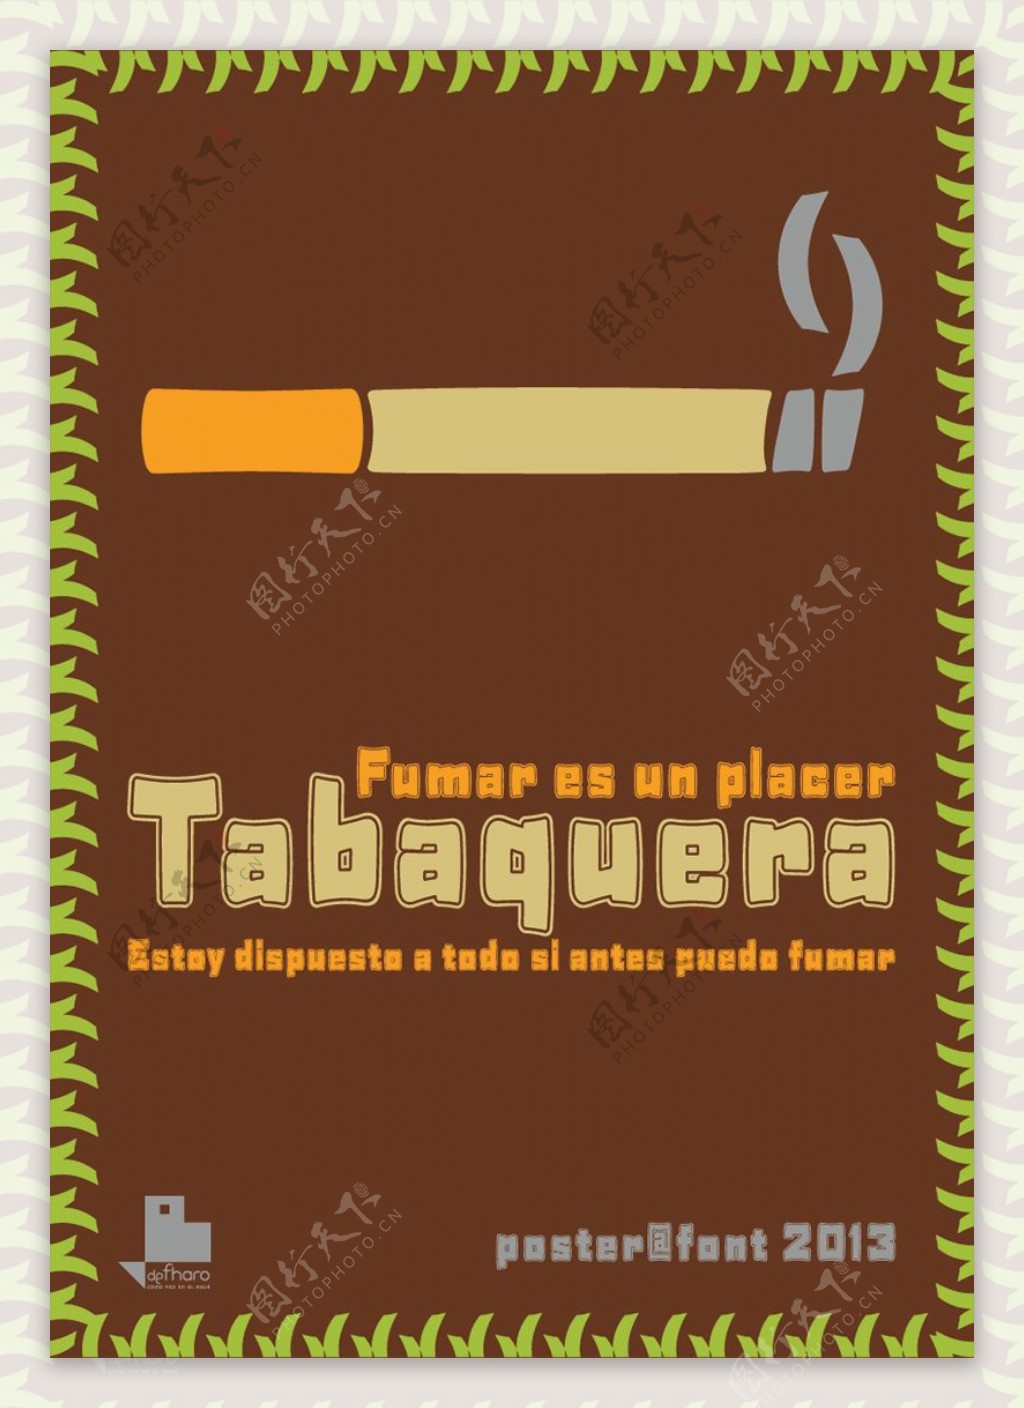 tabaquera字体